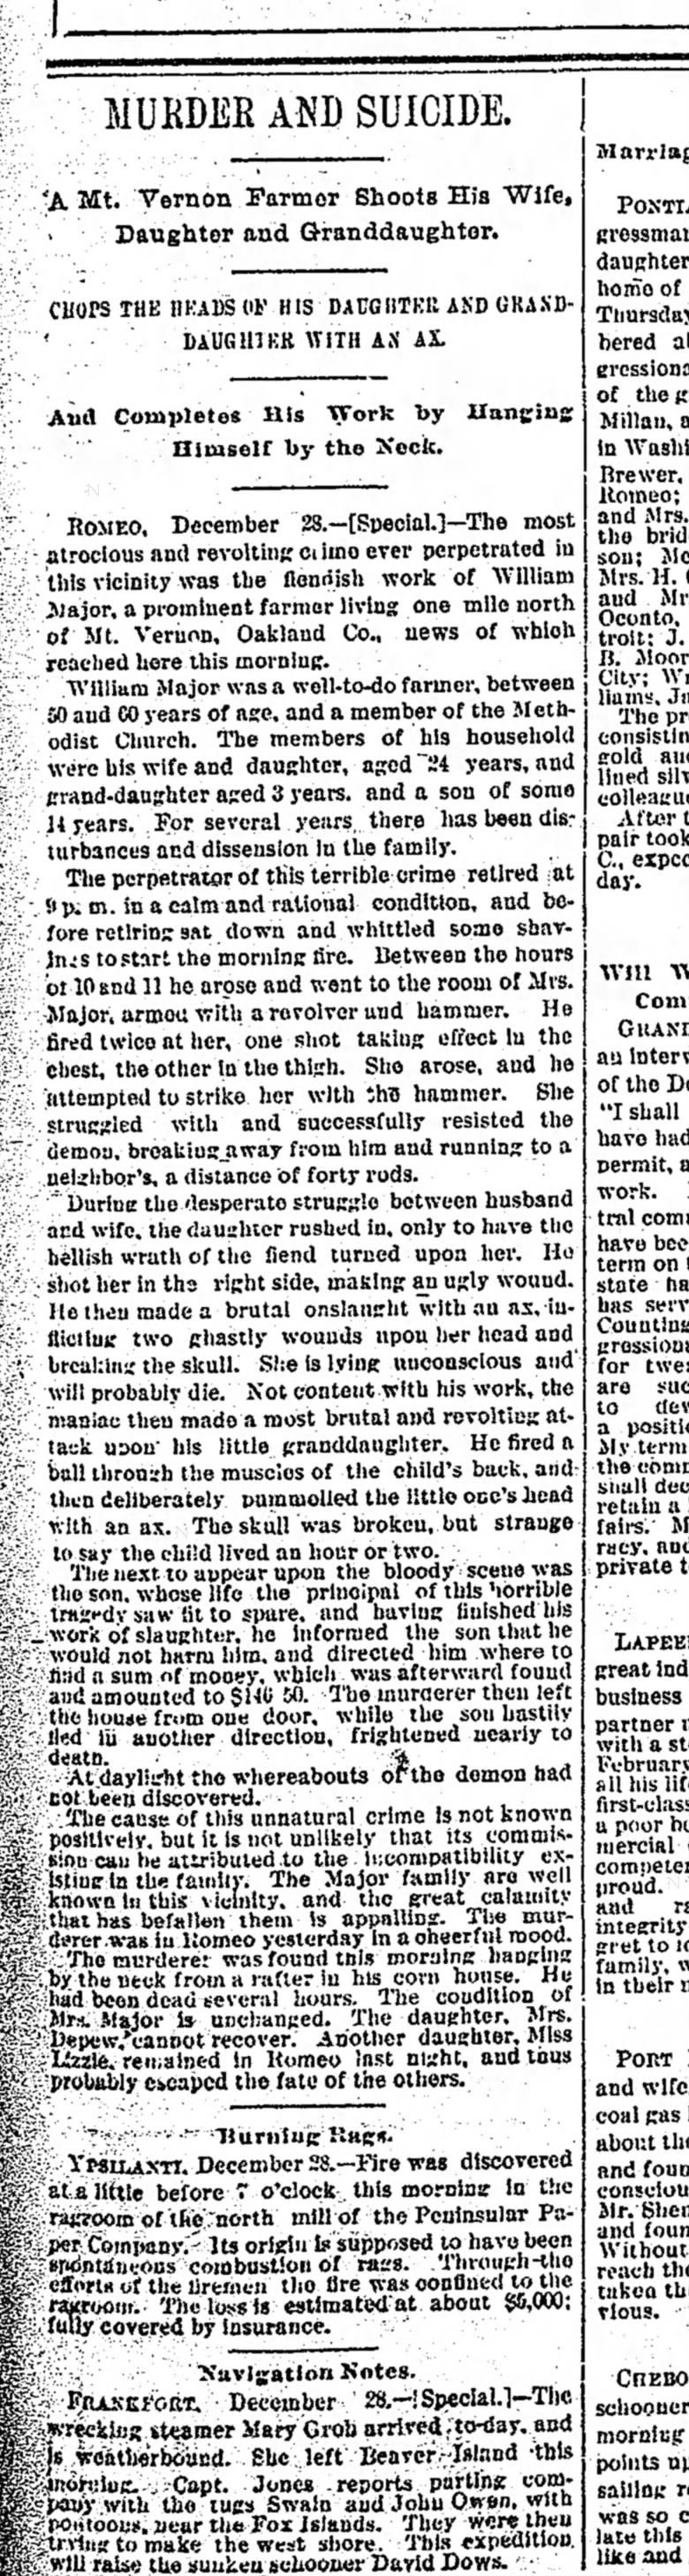 Major Murder-Dec. 29, 1889 pg 7 Detroit FP